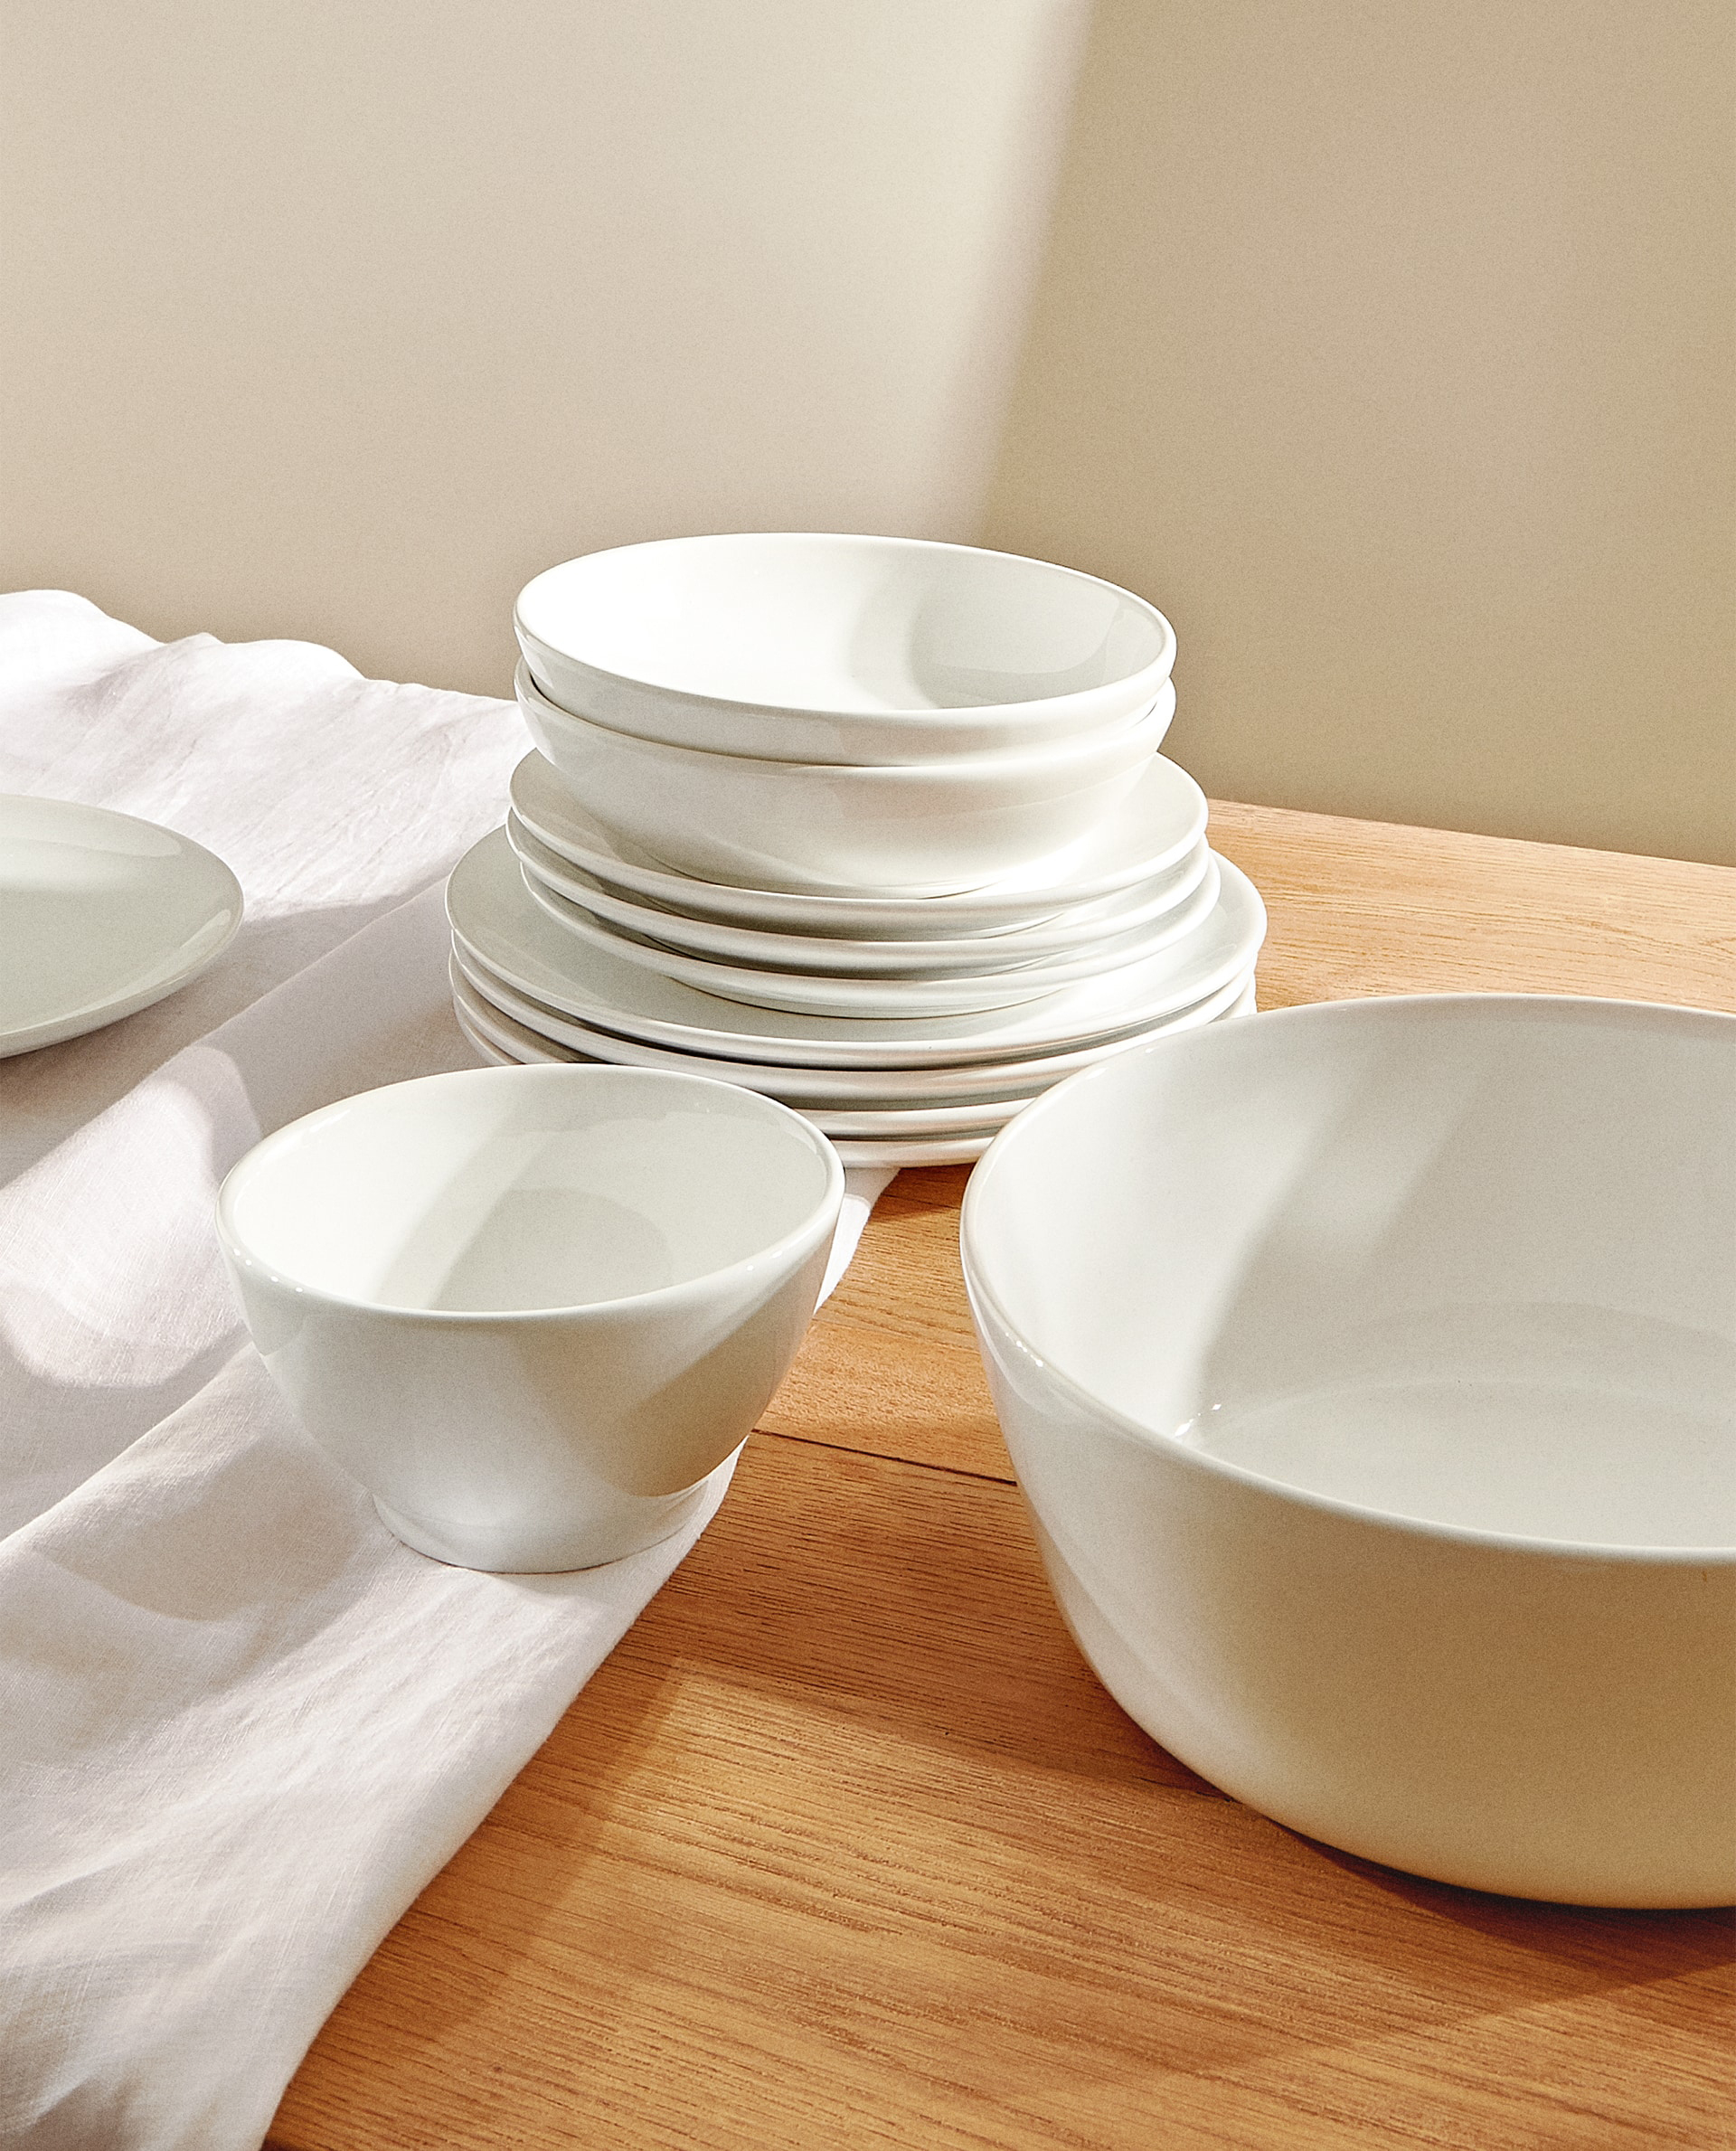 earthenware dinnerware